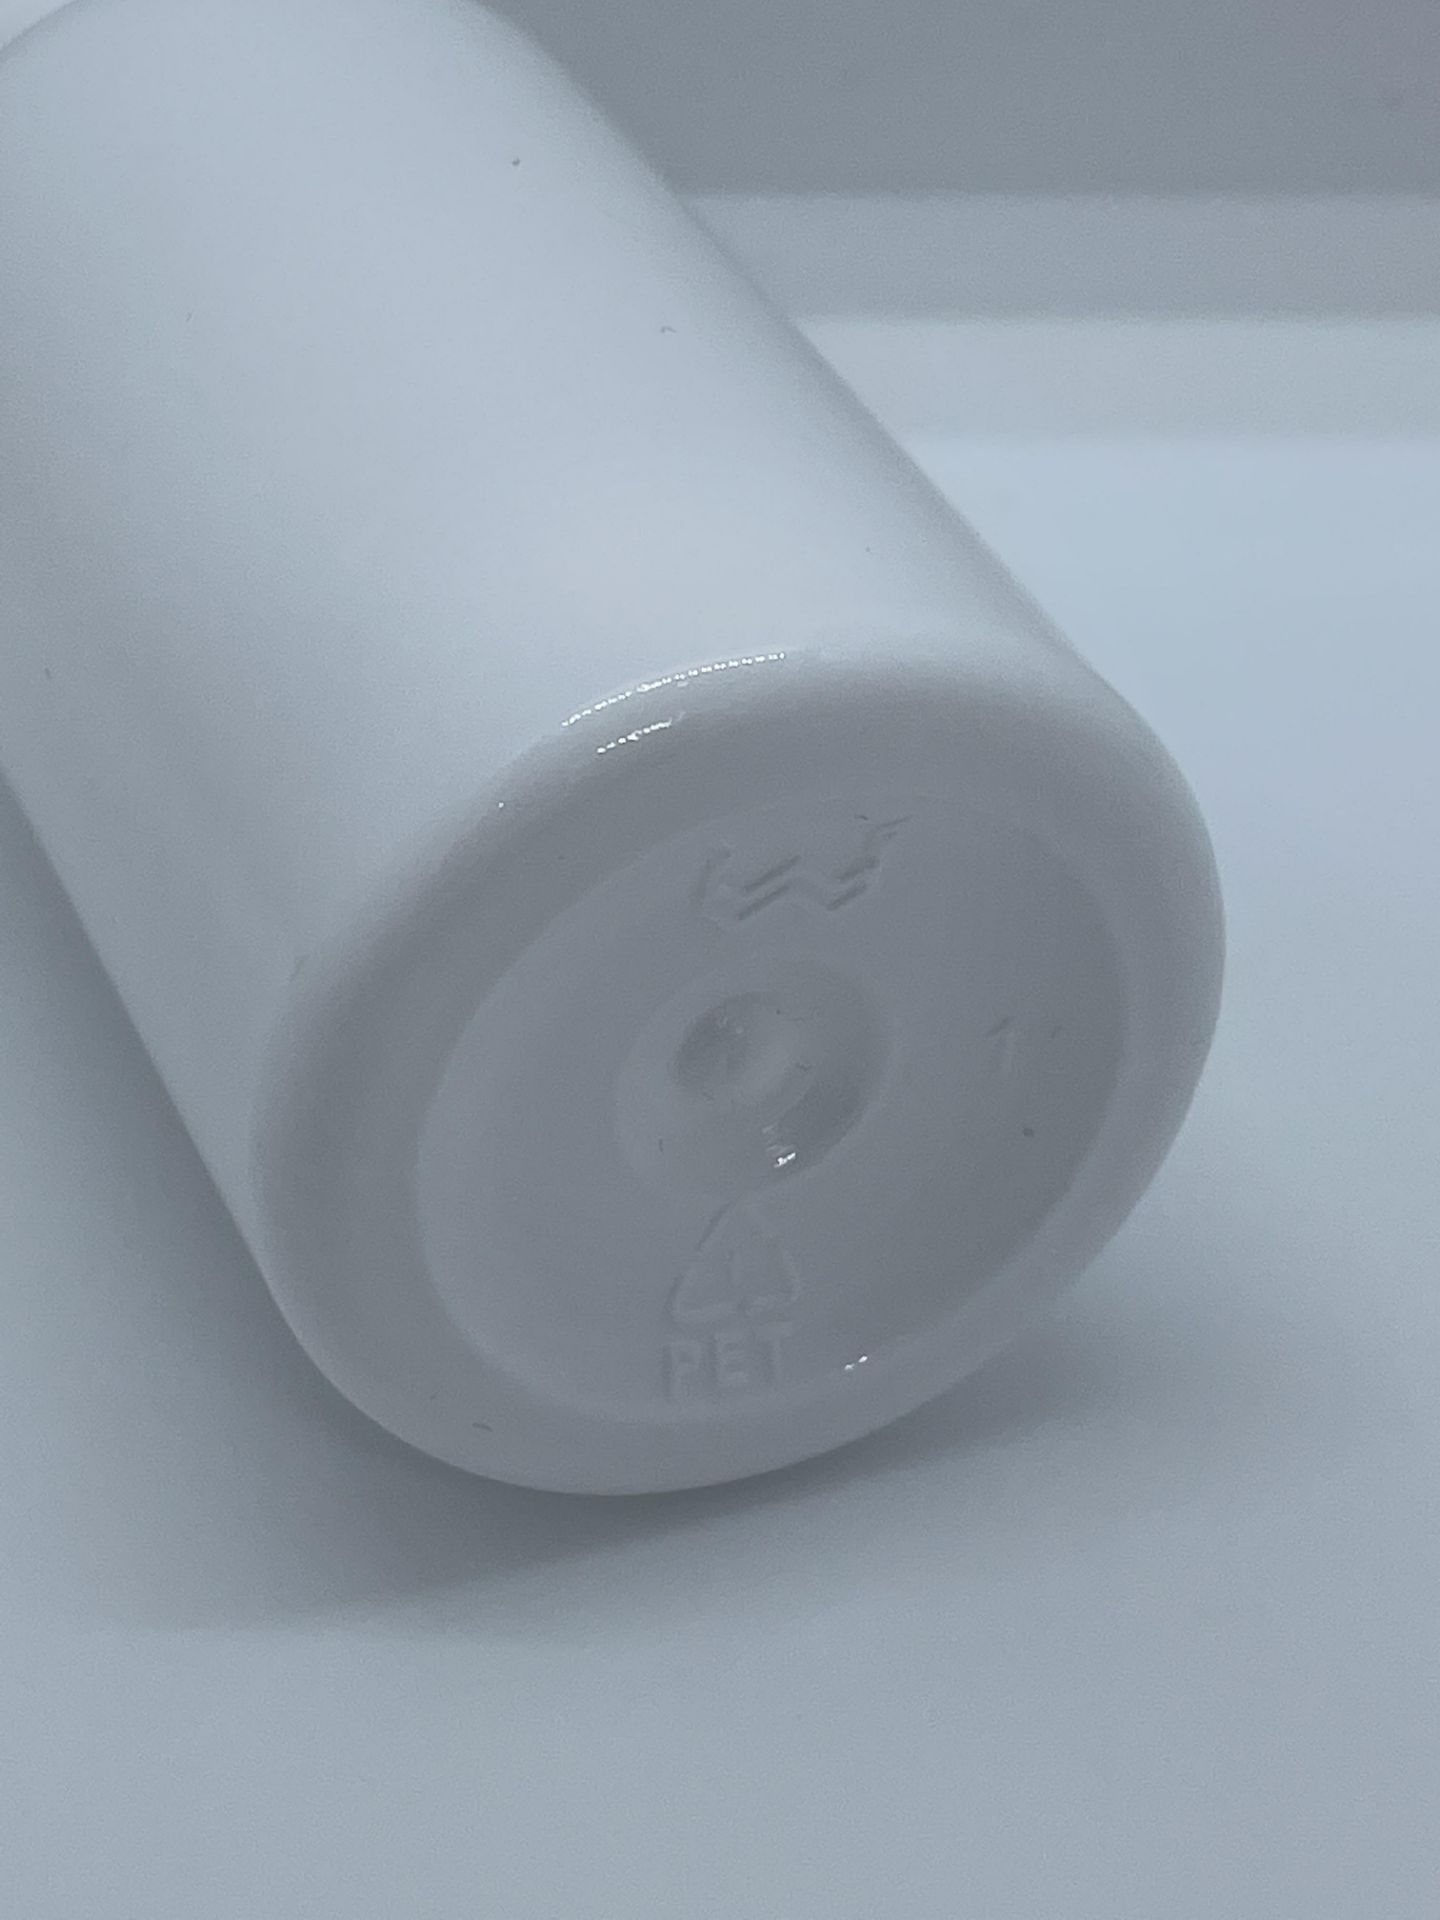 32,000 - White Plastic Bullet 2 oz Empty Bottles, 20-410 Threading Neck, 3.25" Tall, 1.25" Diameter - Image 5 of 8